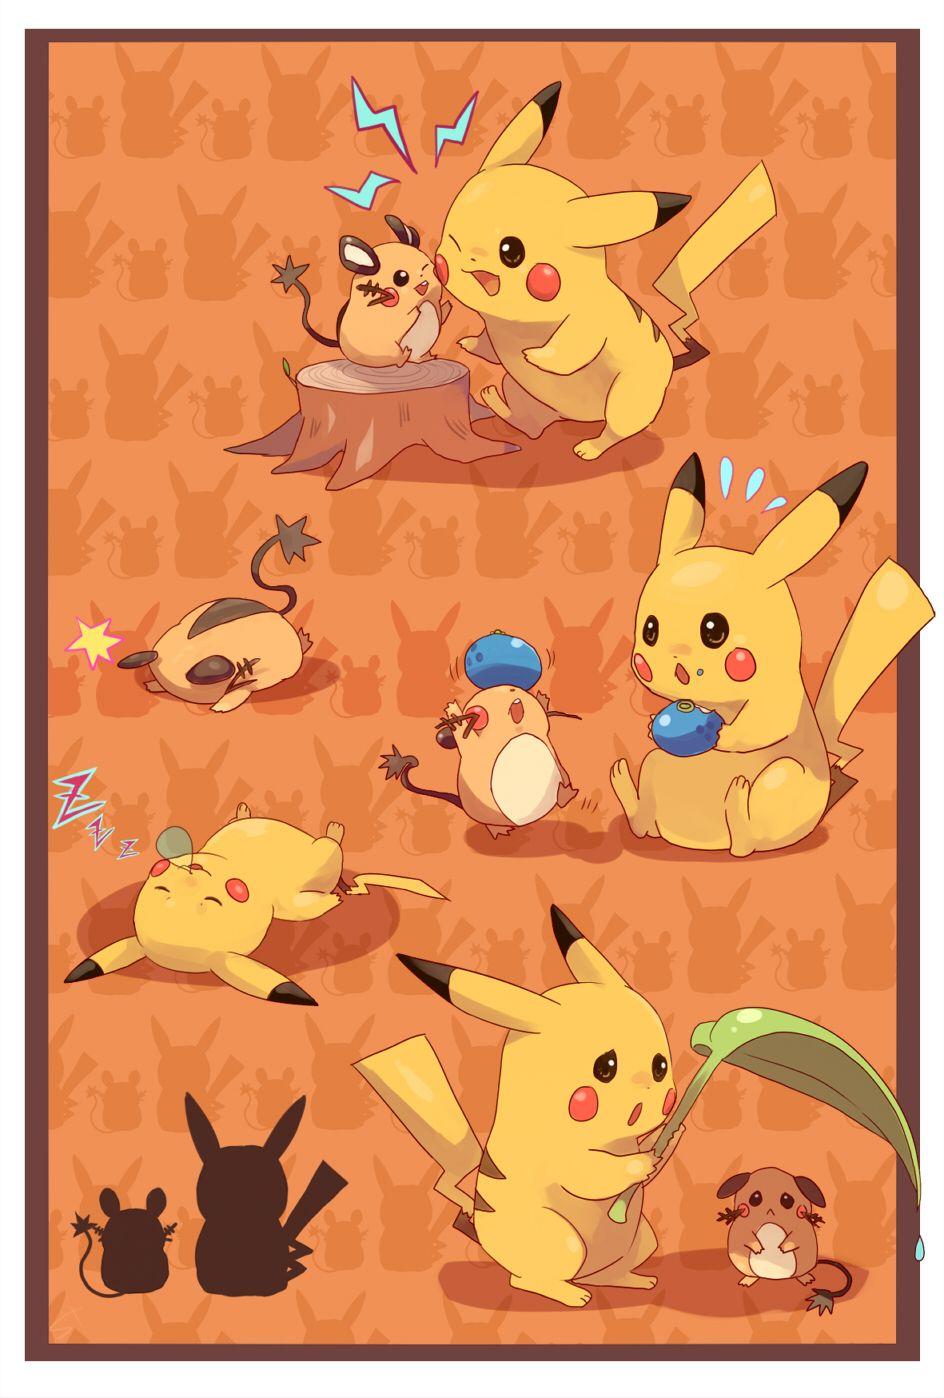 Pikachu & Dedenne. Pokémon